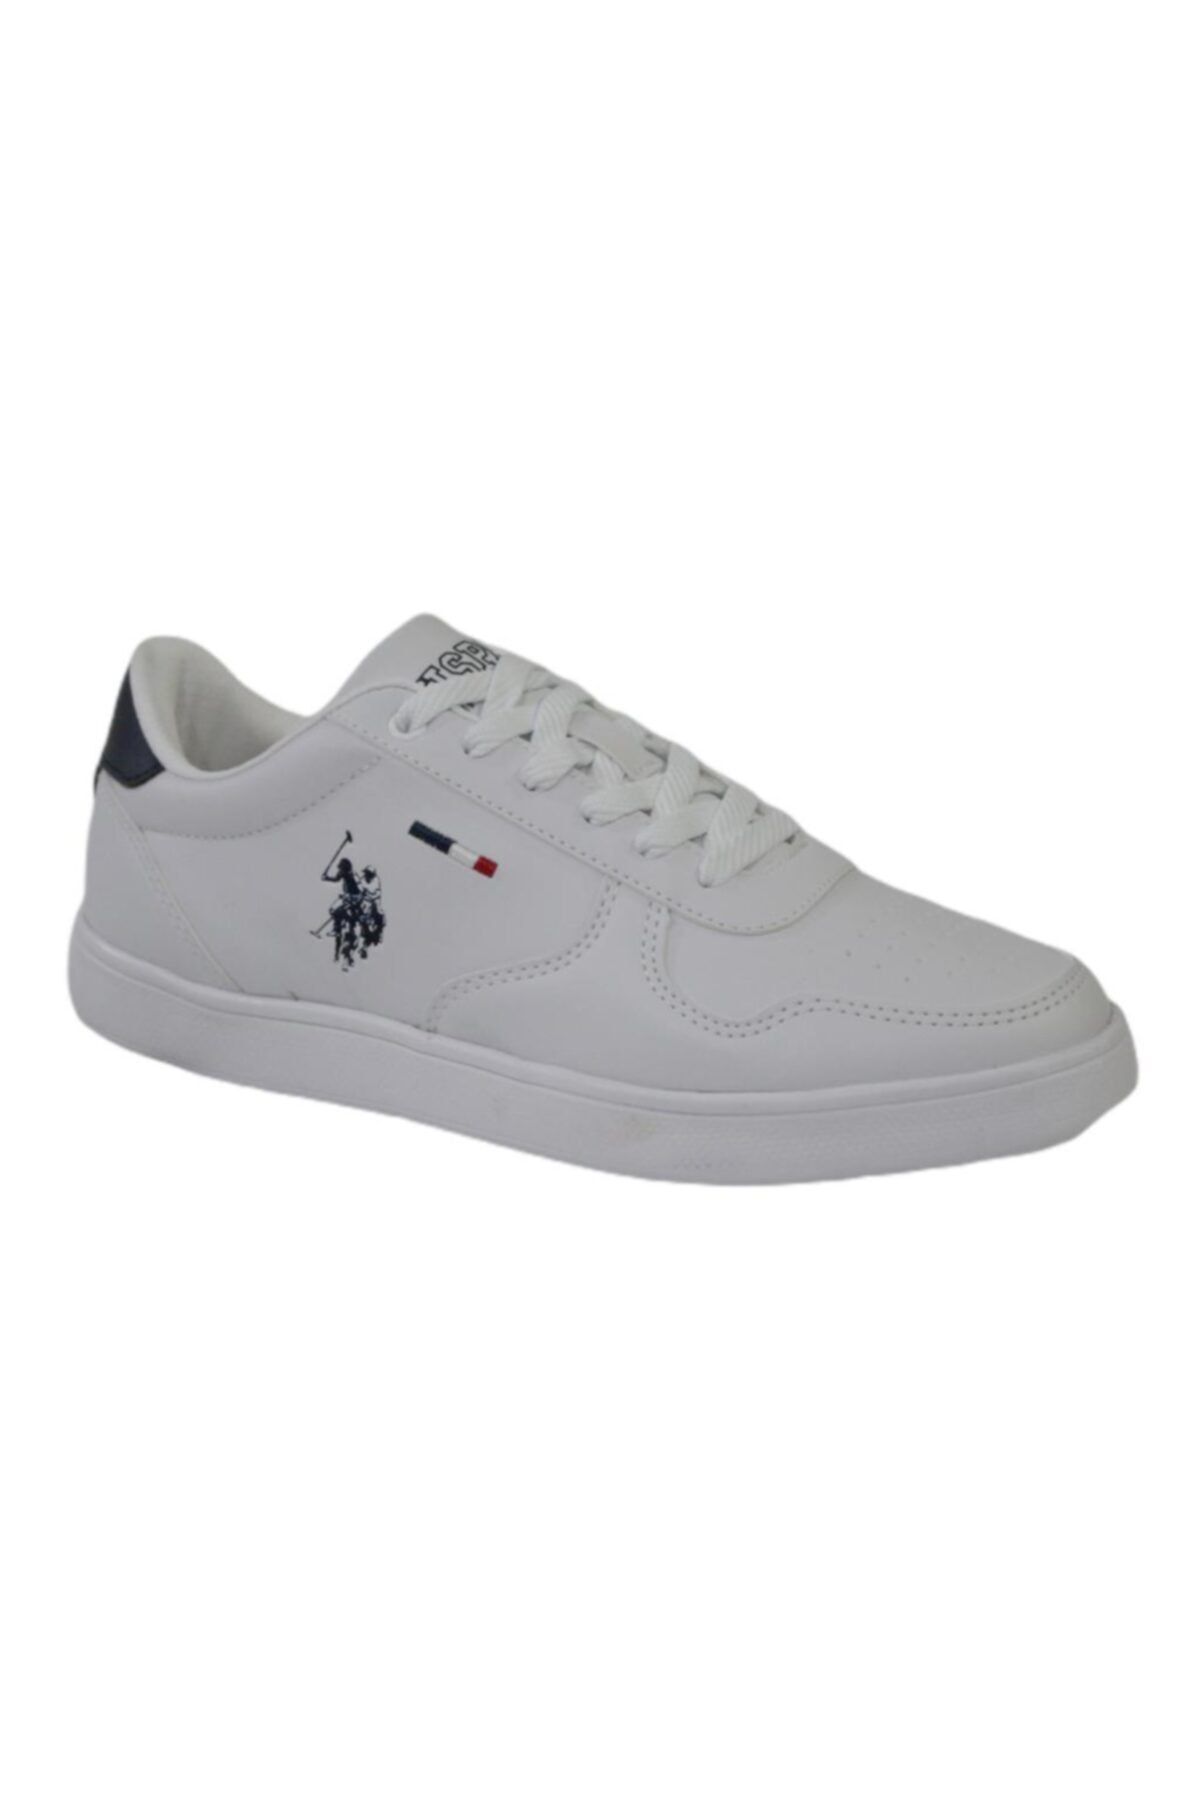 U.S. Polo Assn. THUNDER WMN Beyaz Kadın Sneaker Ayakkabı 100605422